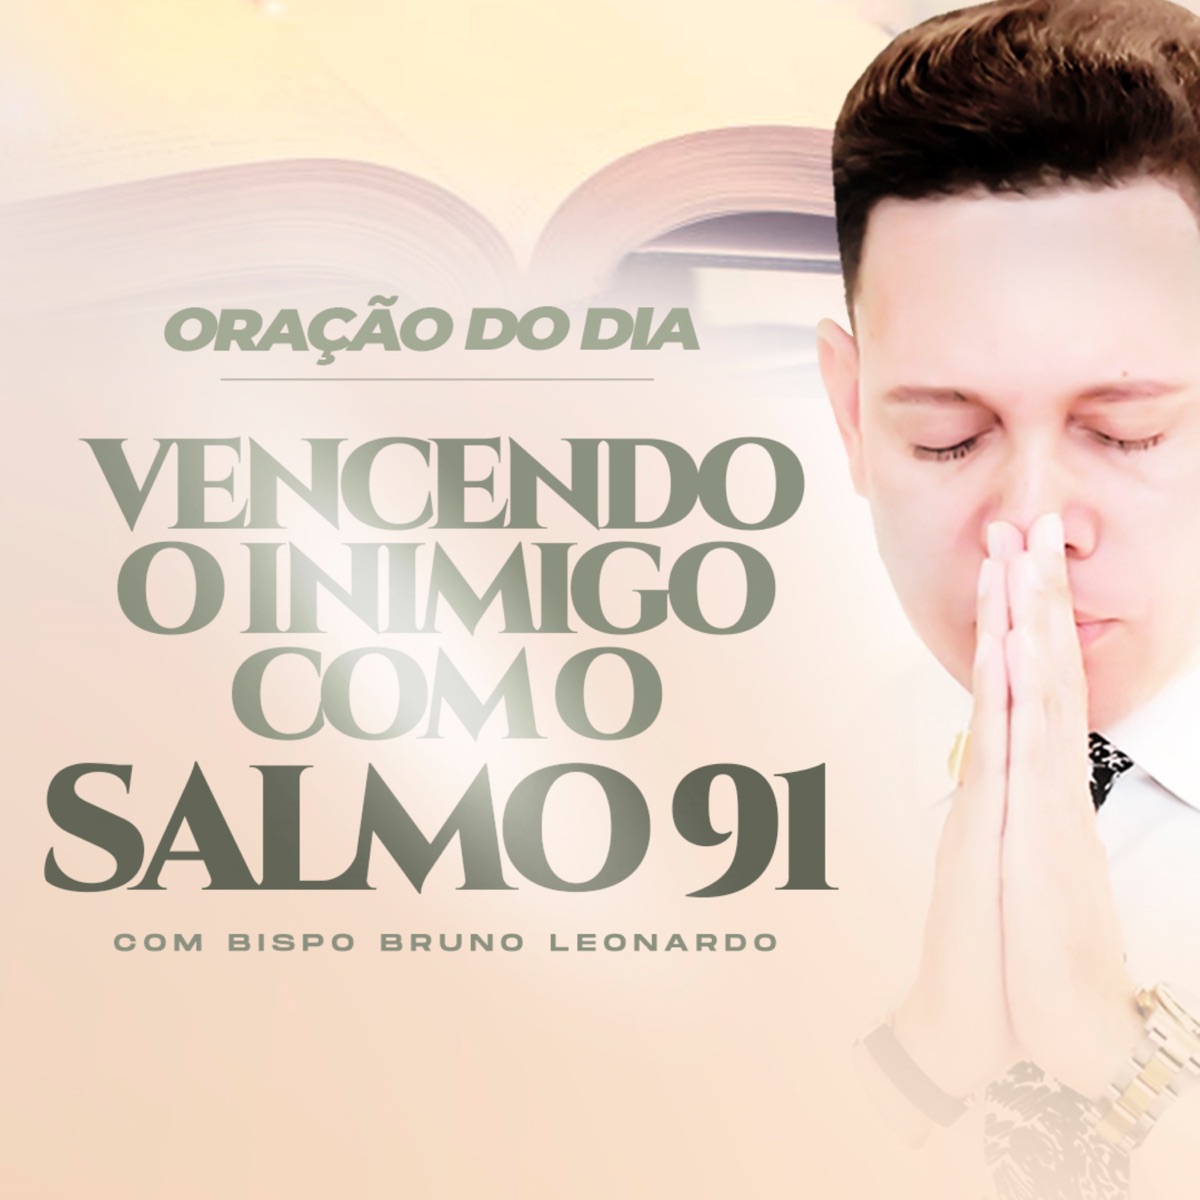 BISPO BRUNO LEONARDO SM - Oração Vencendo o Inimigo Com o Salmo 91